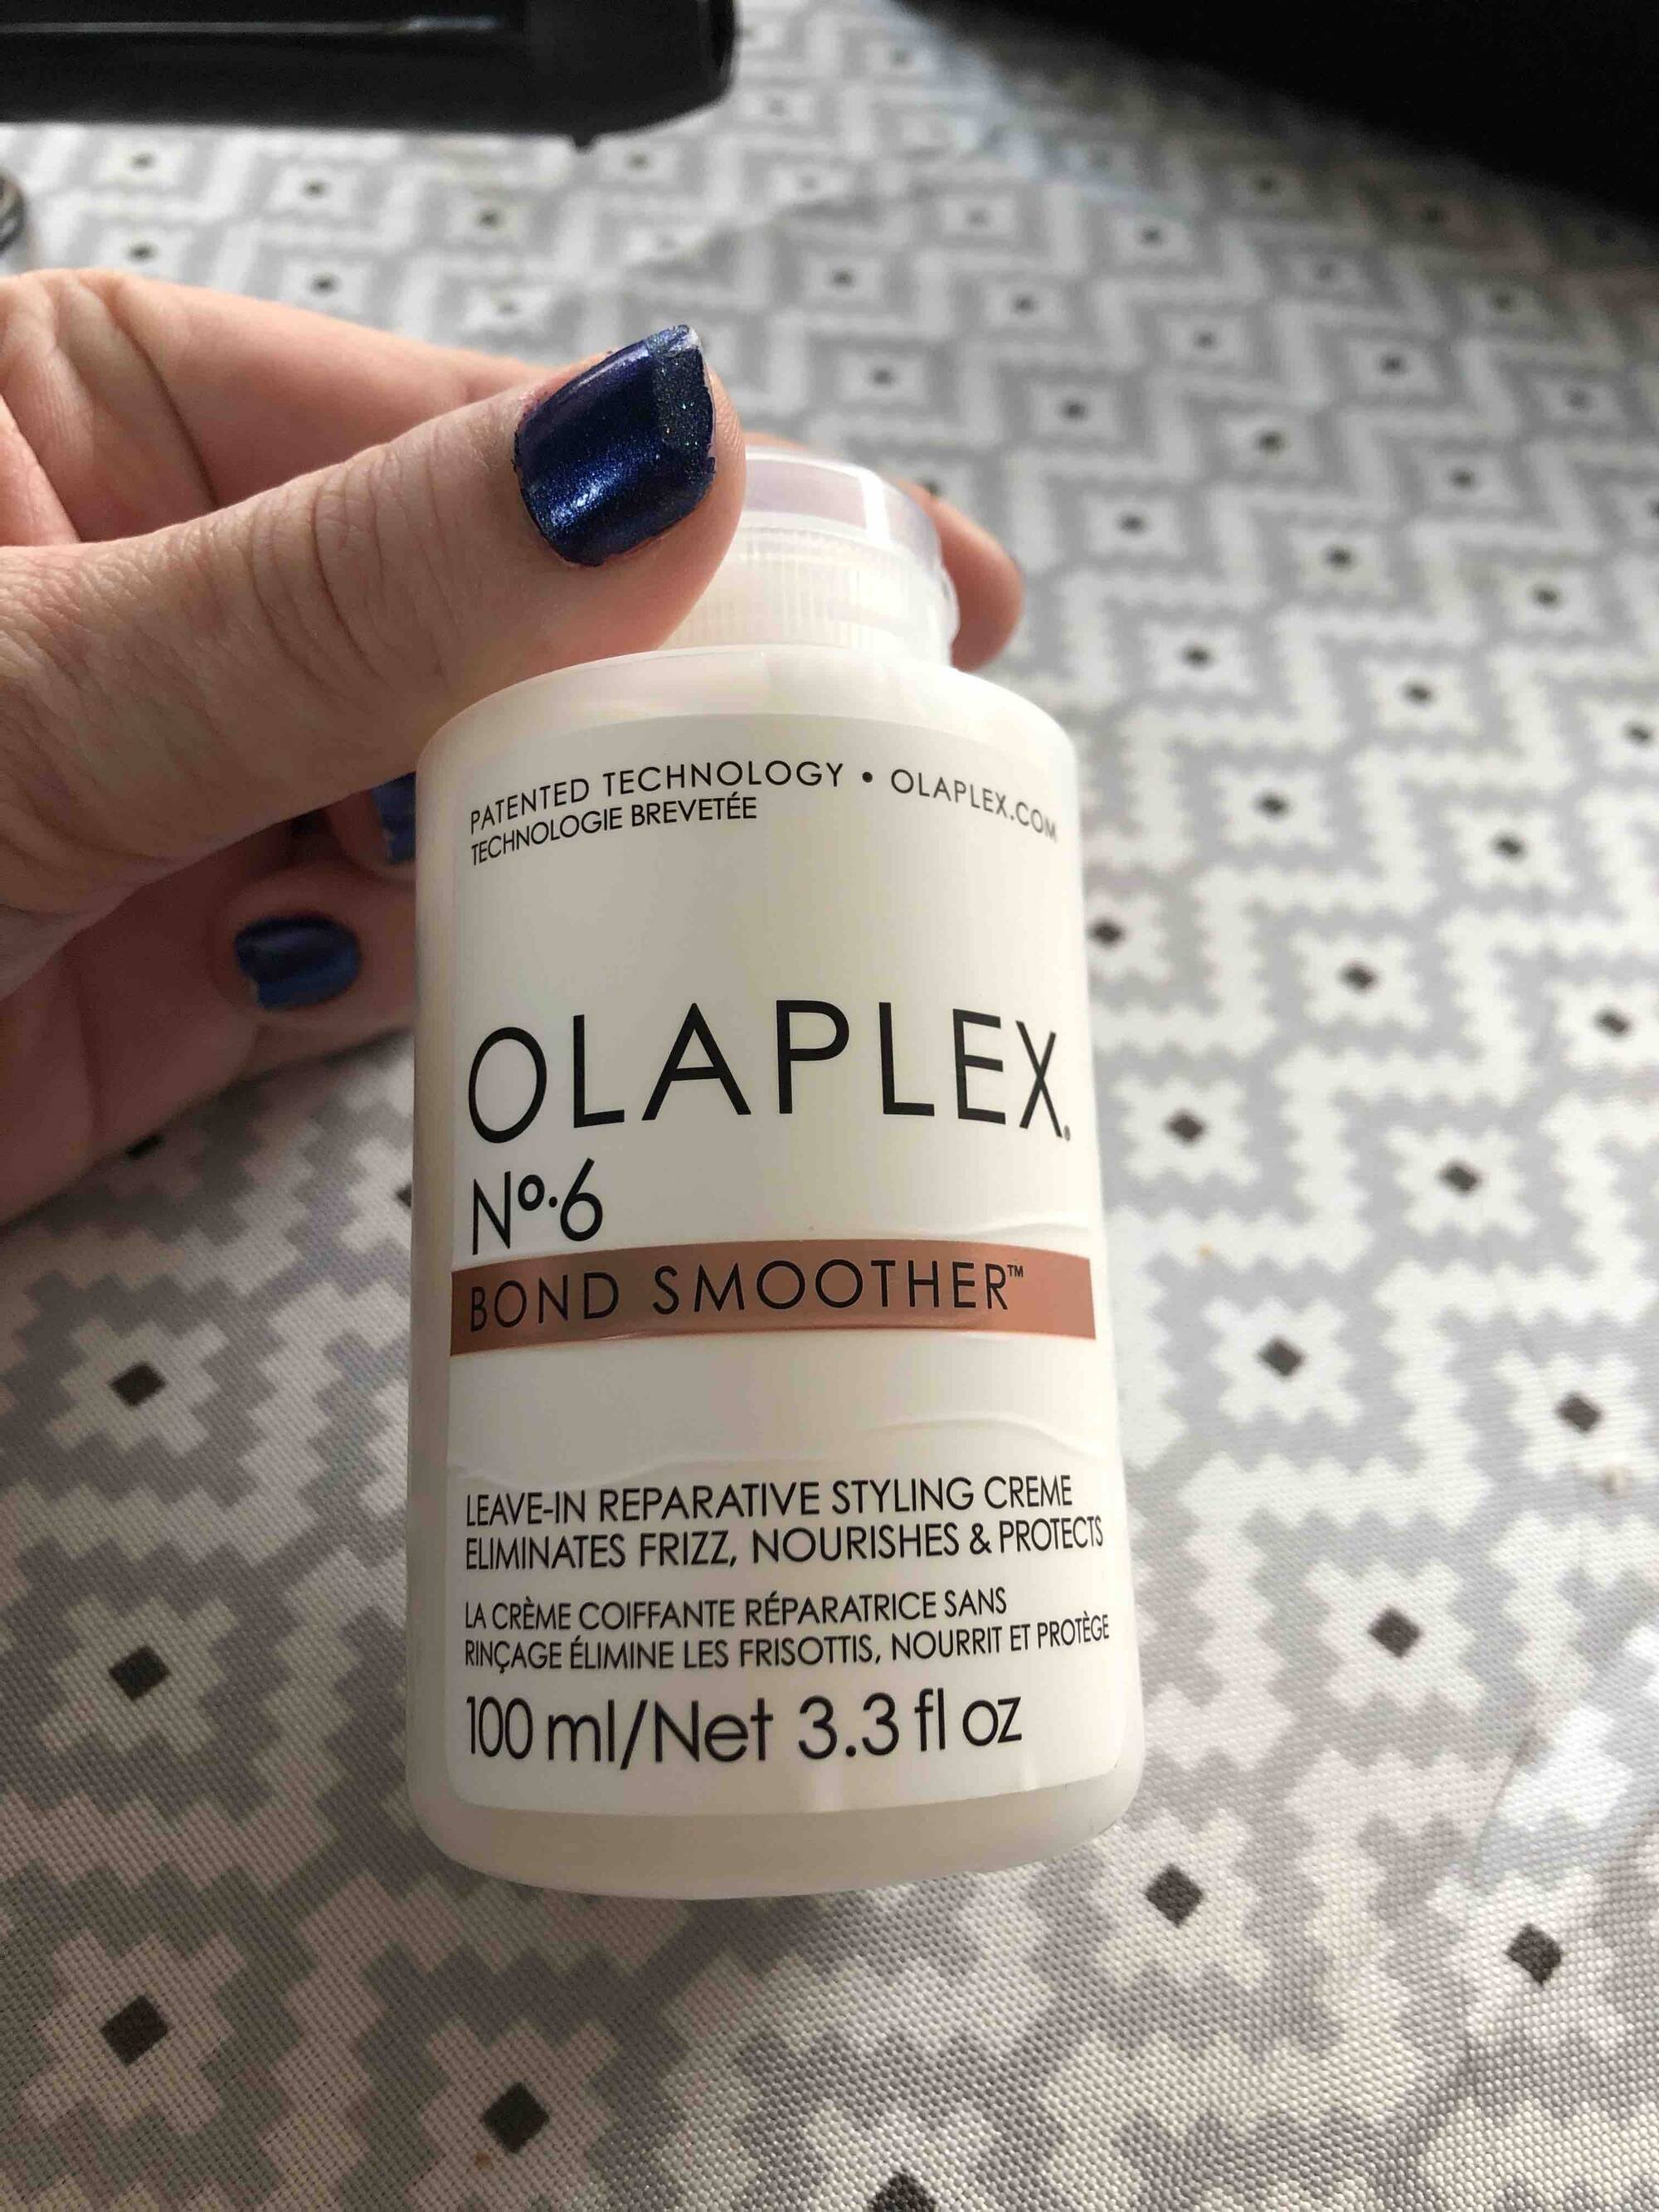 OLAPLEX - Bond smoother n° 6 - La crème coiffante réparatrice